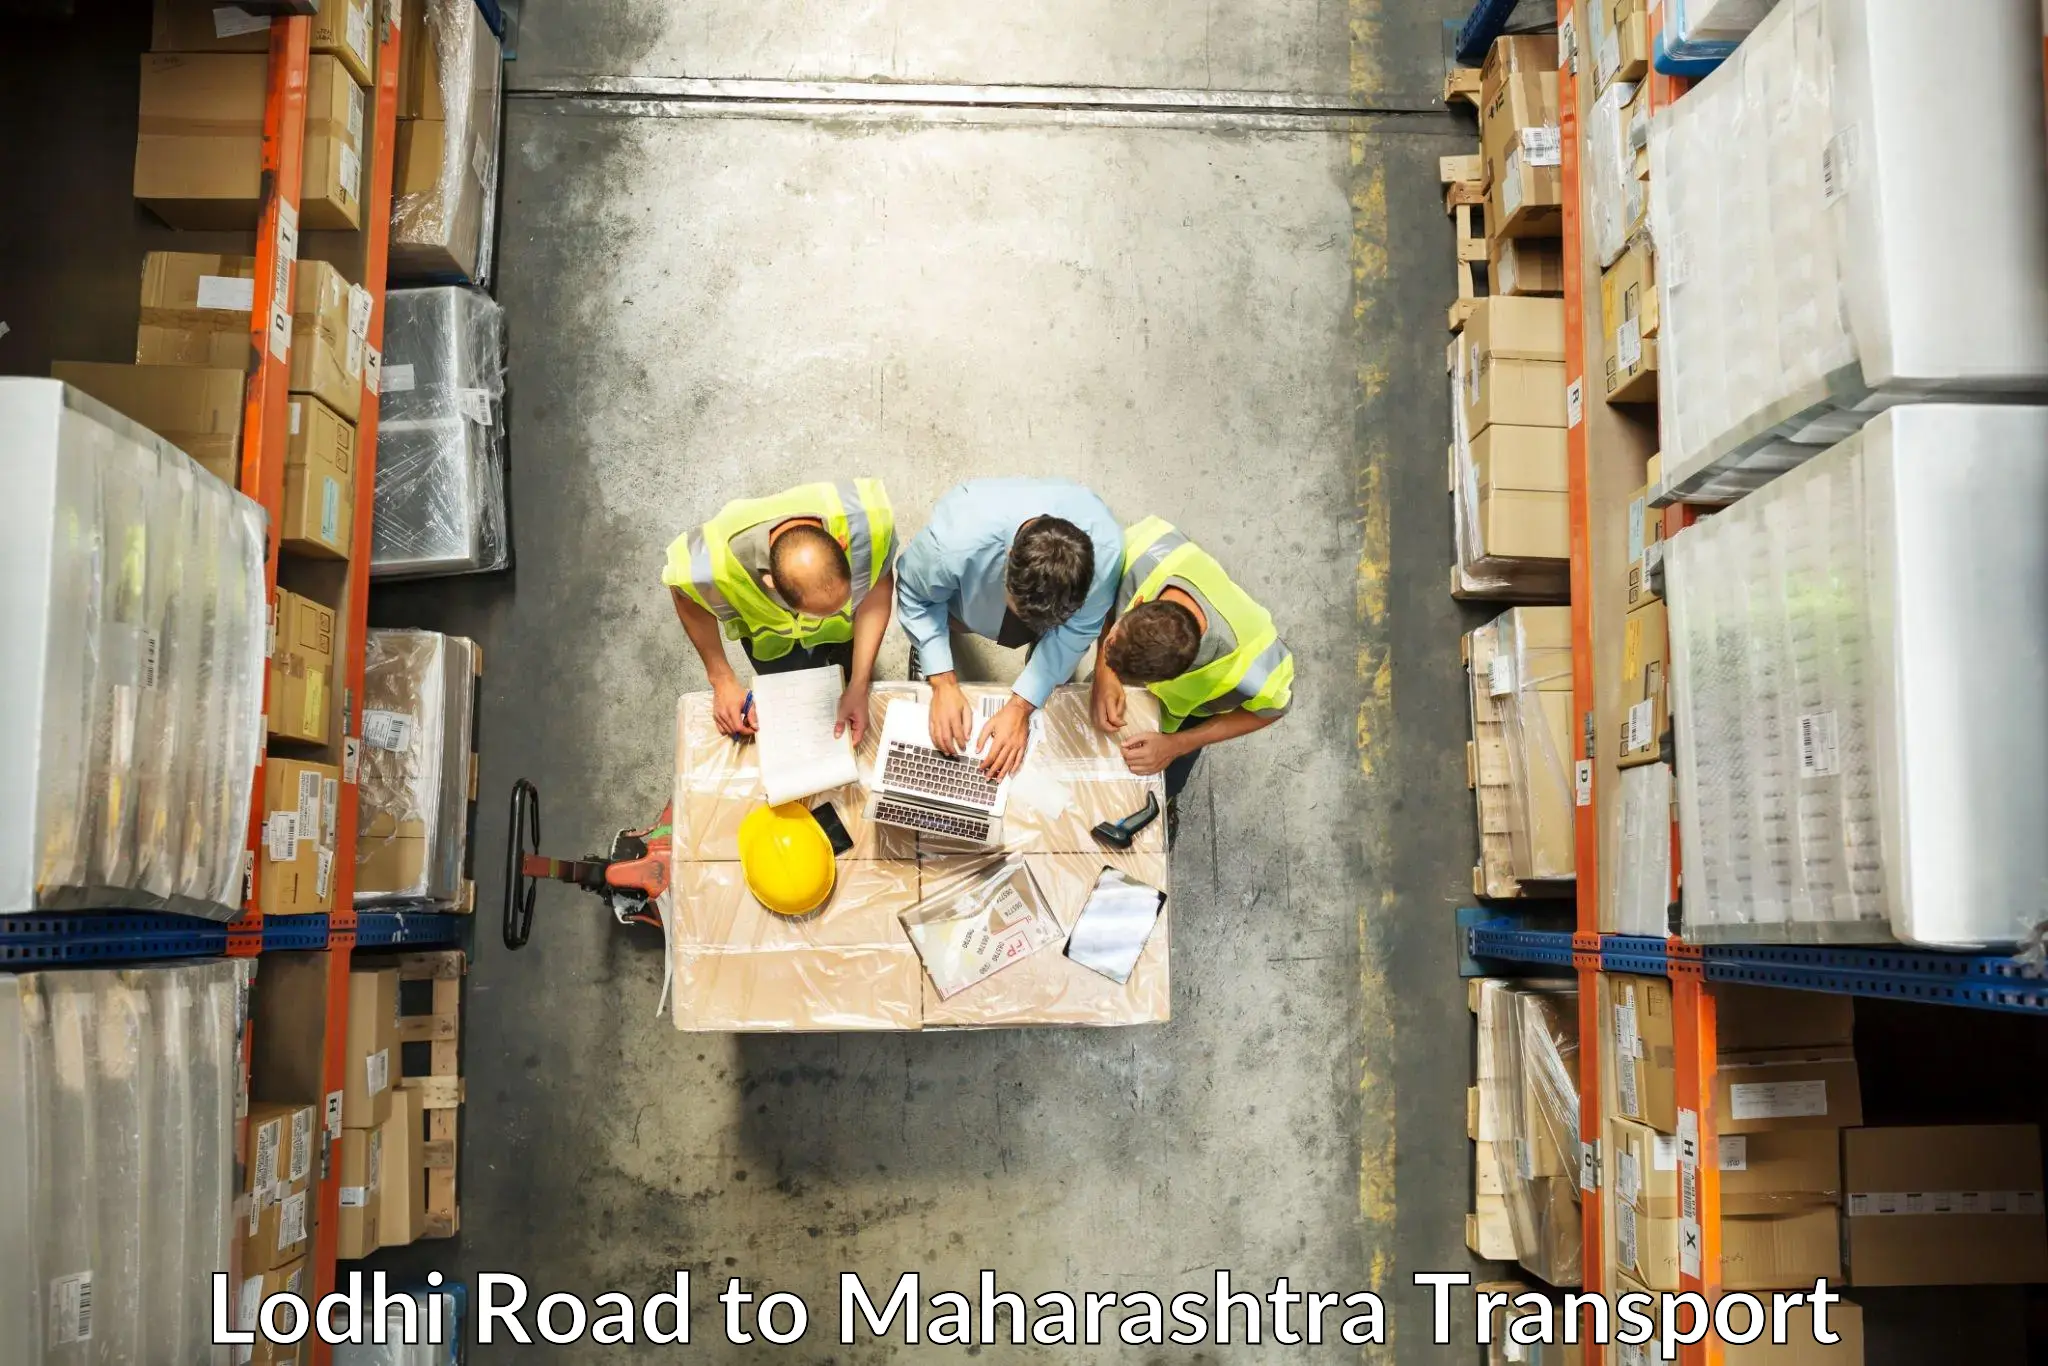 Furniture transport service Lodhi Road to Mumbai